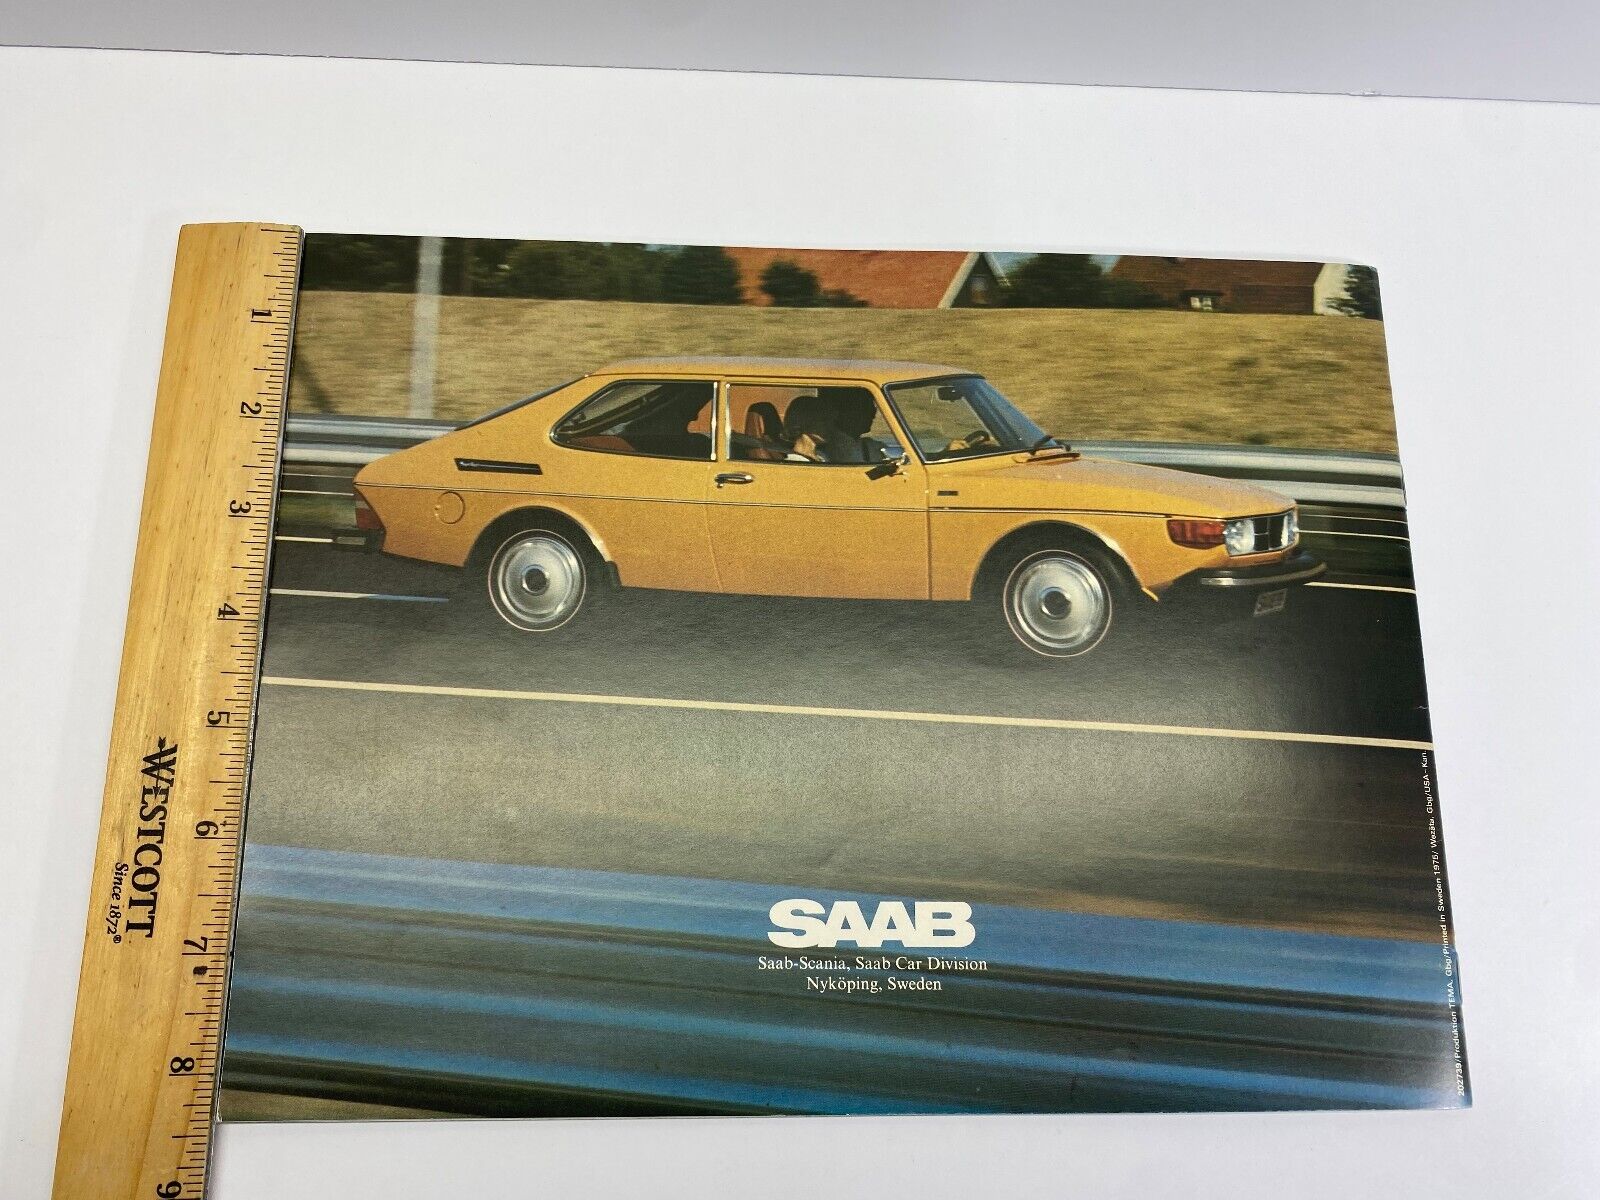 SAAB 1975 Dealer Catalog 99 GL Sedan, 99 GL WagonBack 99 EMS New Condition NoRes Без бренда - фотография #9